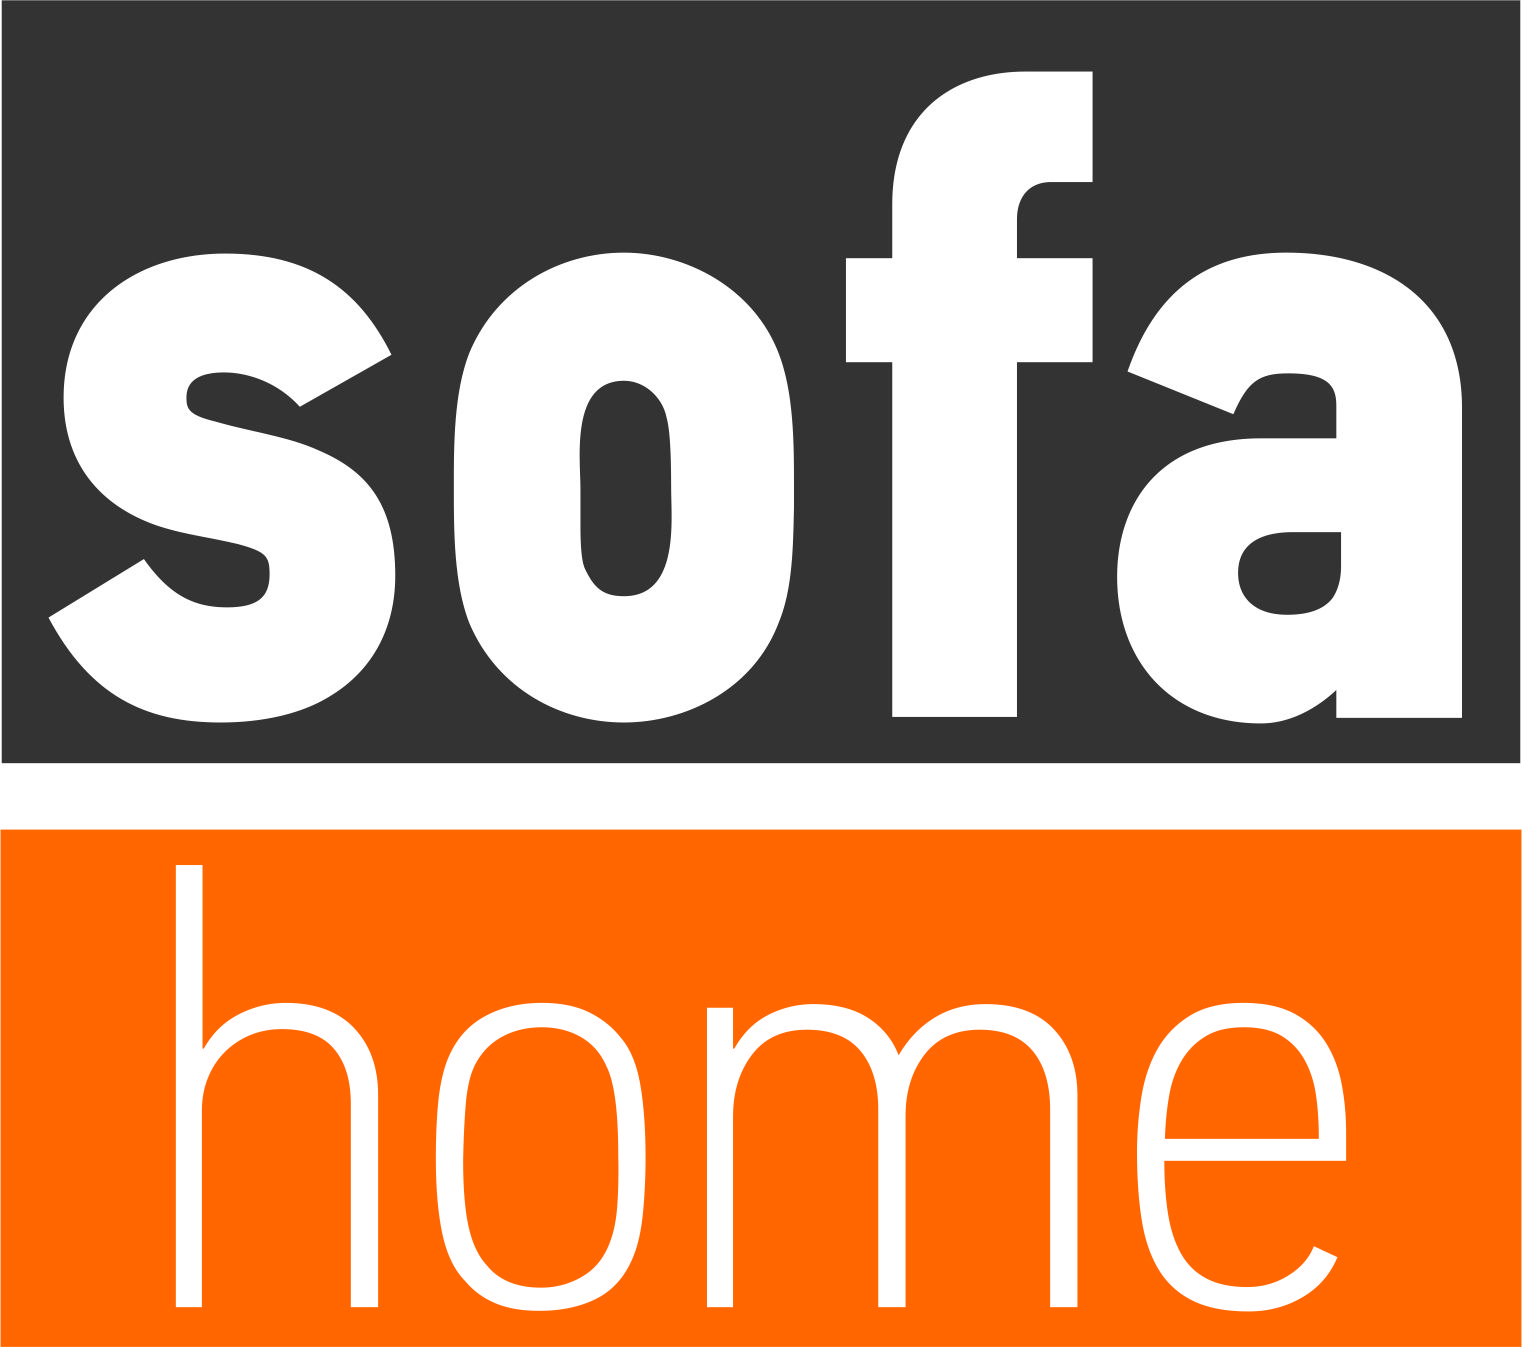 Sofa Home